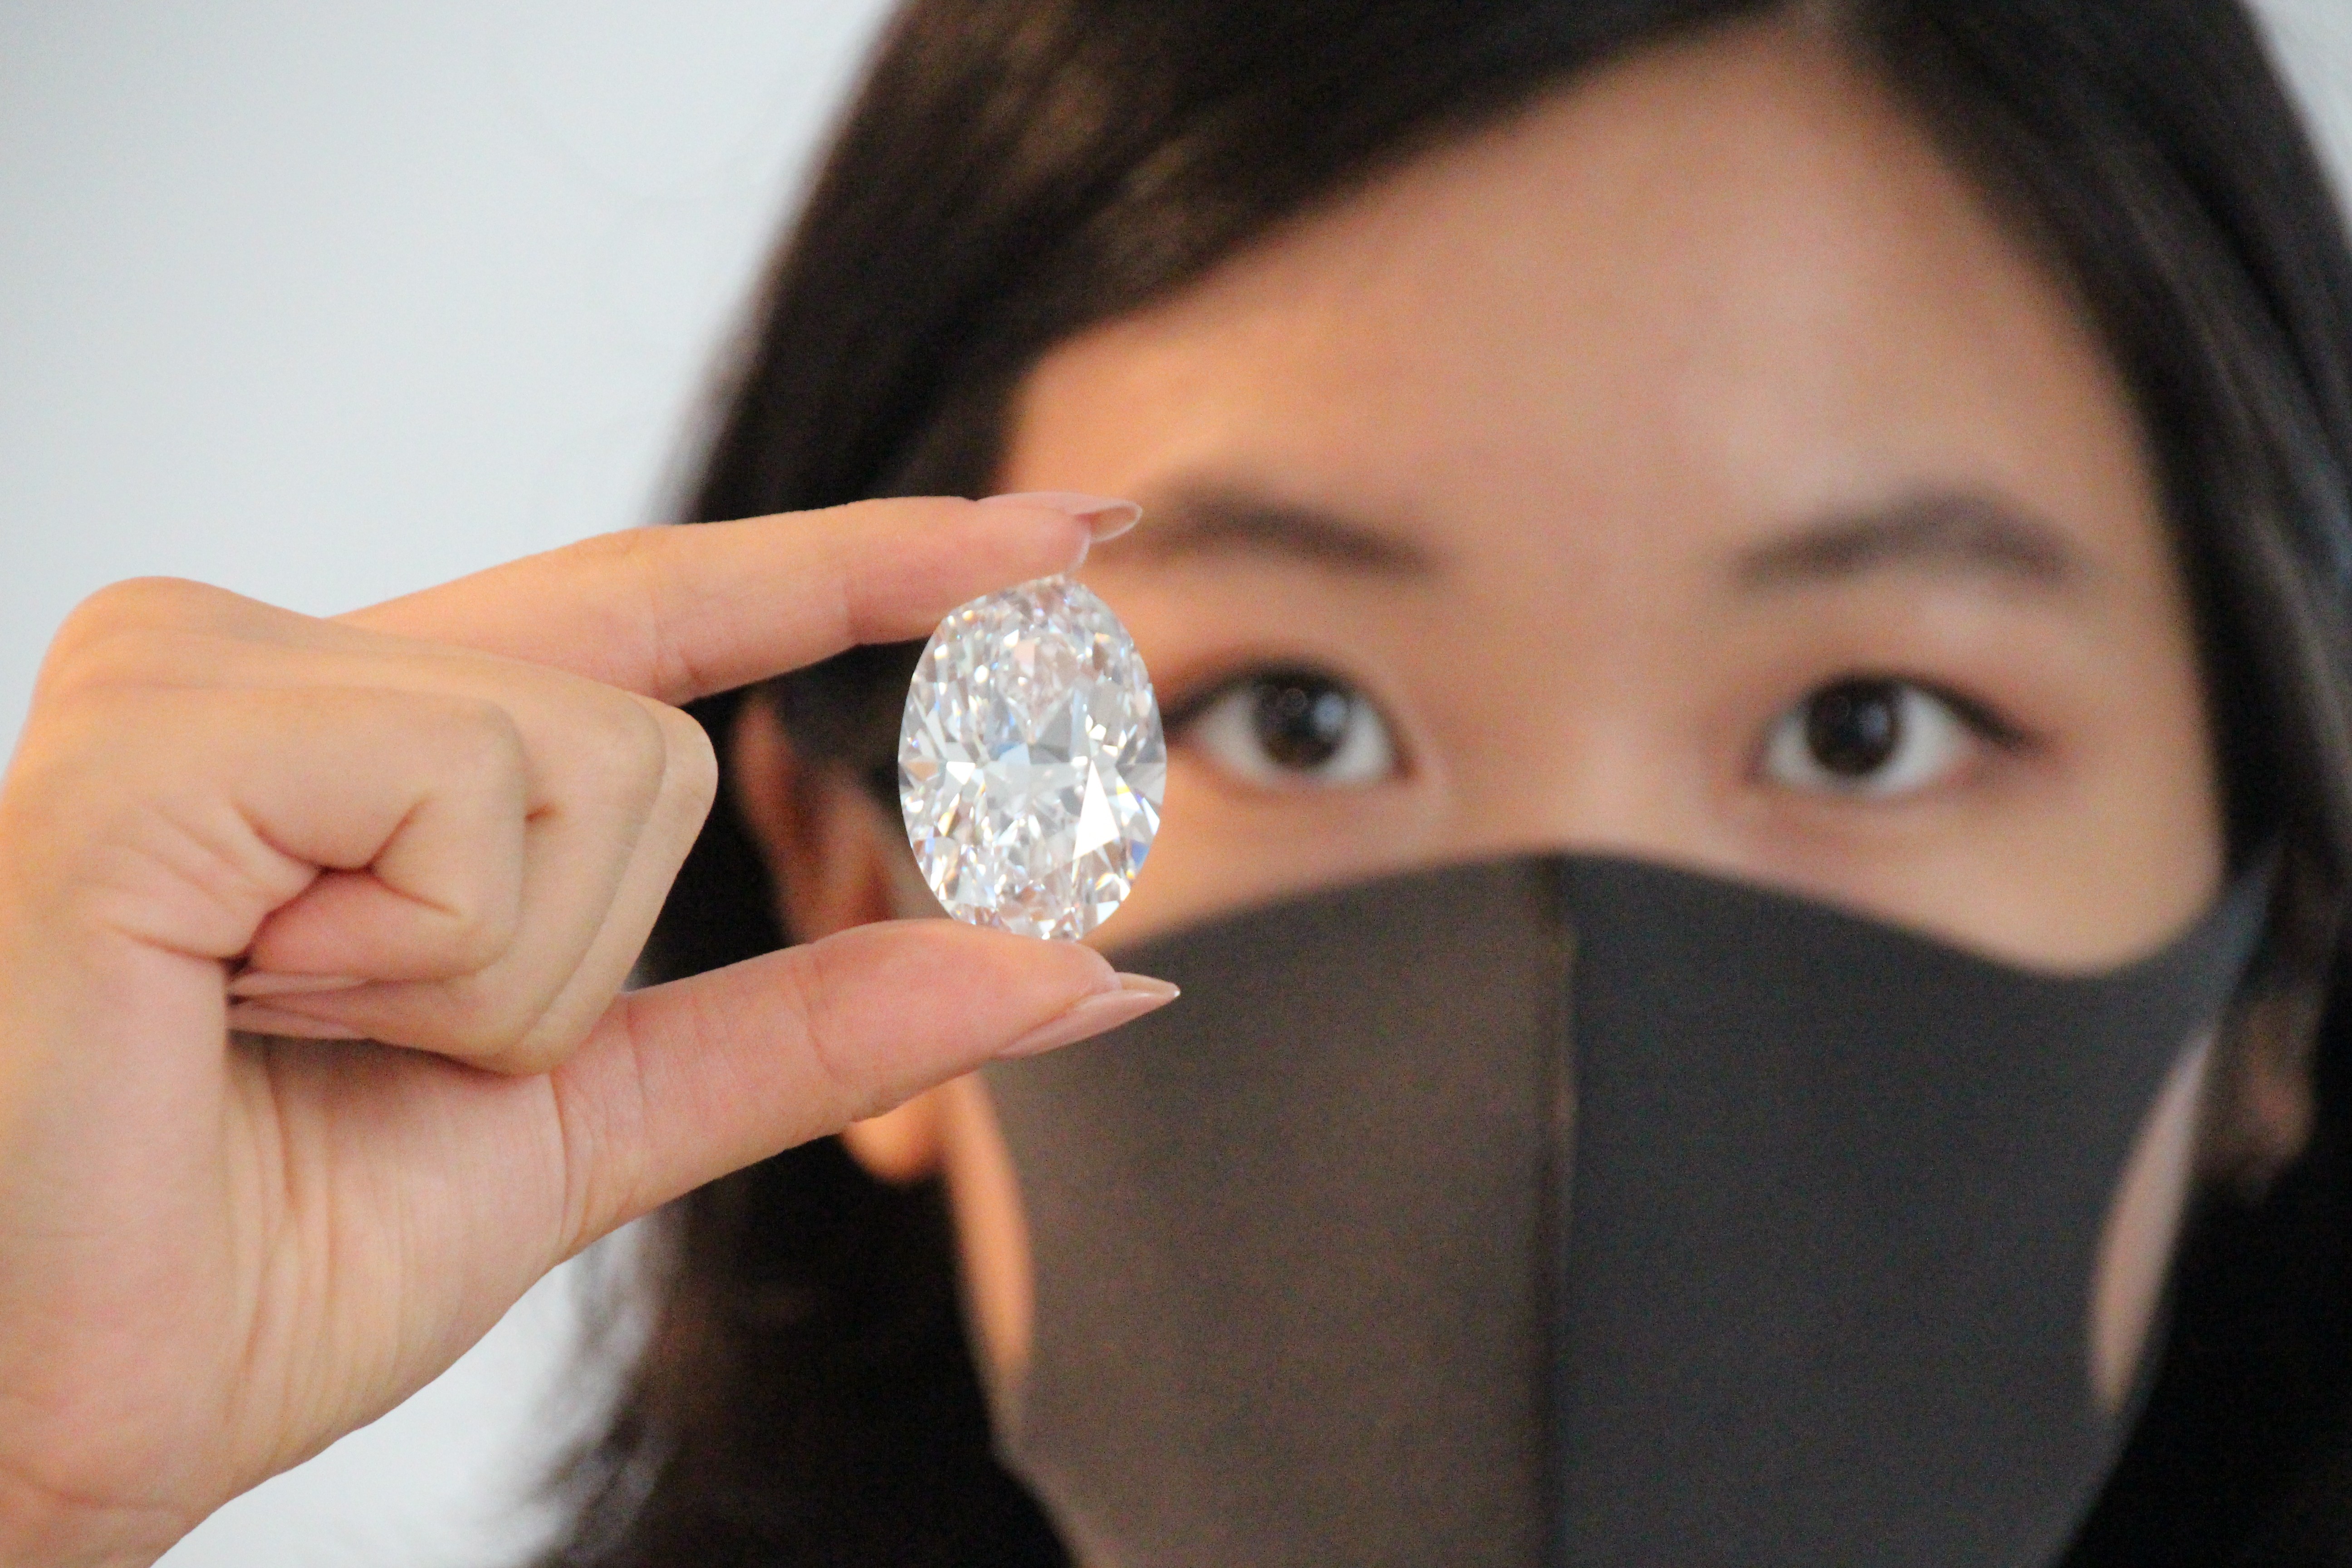 Modelo exibe o diamante raro descoberto no Canadá (Foto: Getty Images)